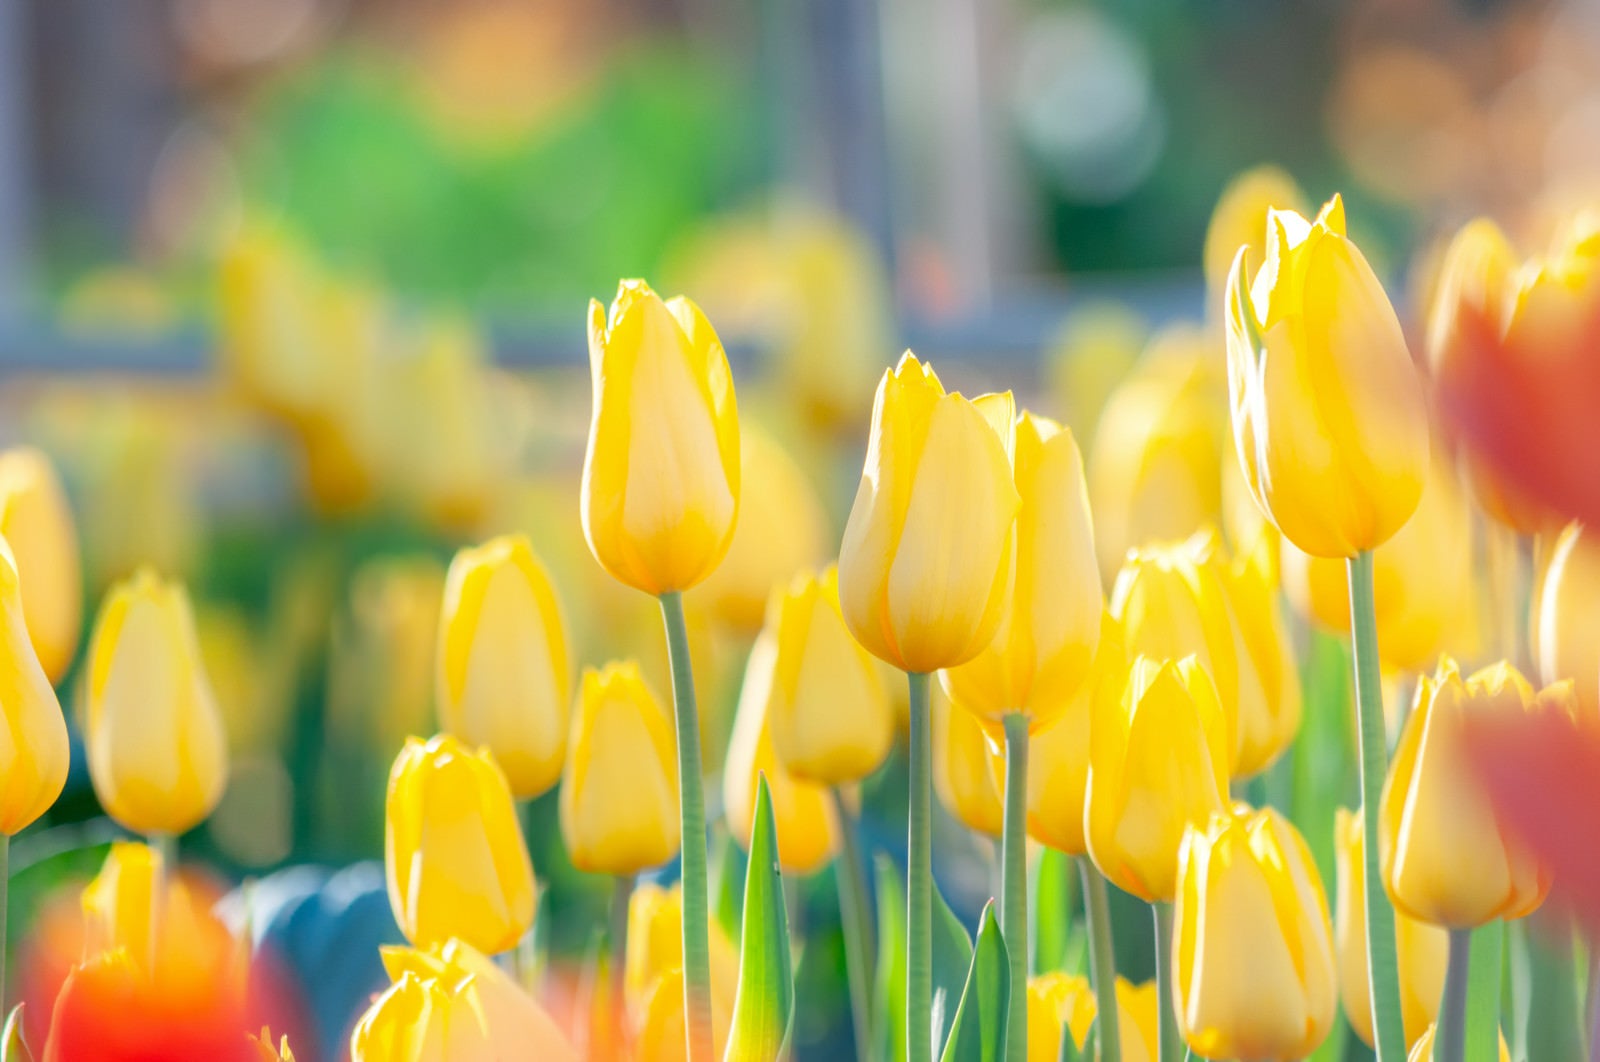 「花壇に咲いた黄色いチューリップ」の写真